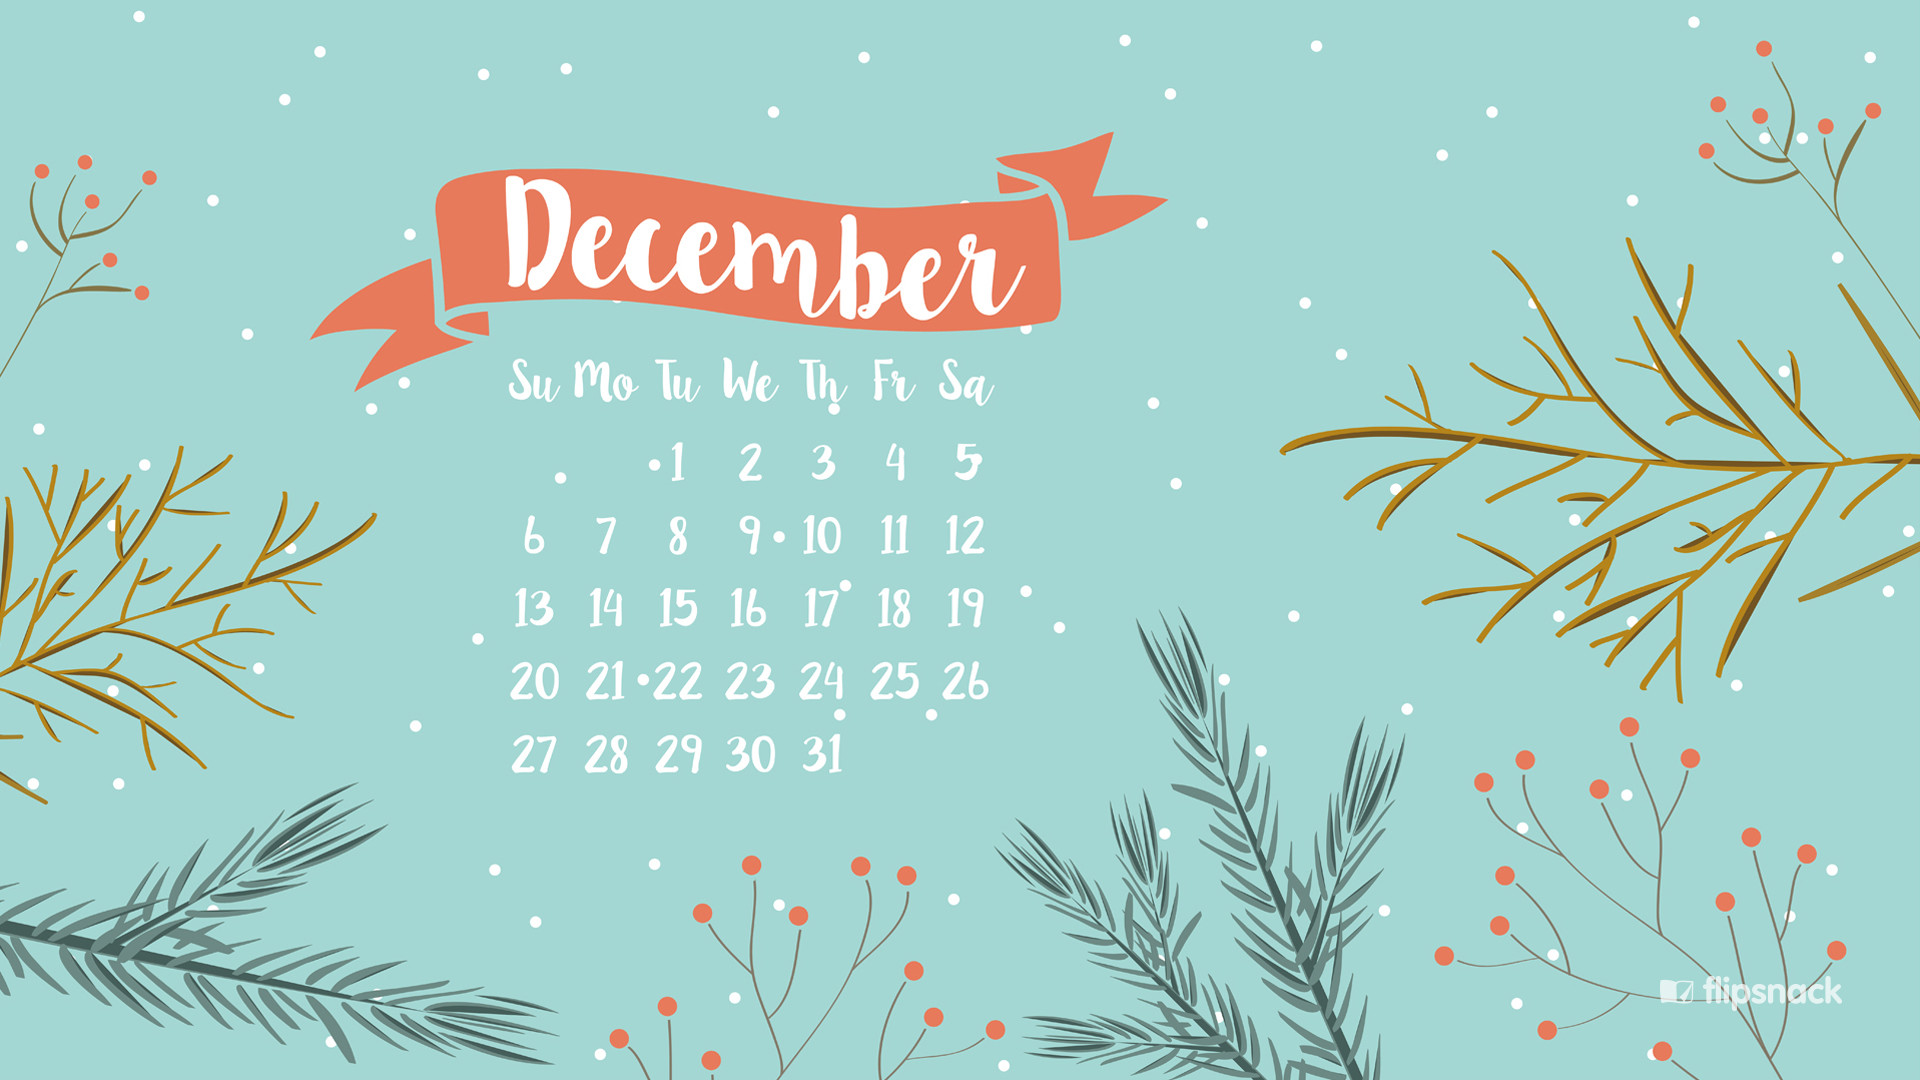 1920x1080 Freebies: December 2015 wallpaper calendars